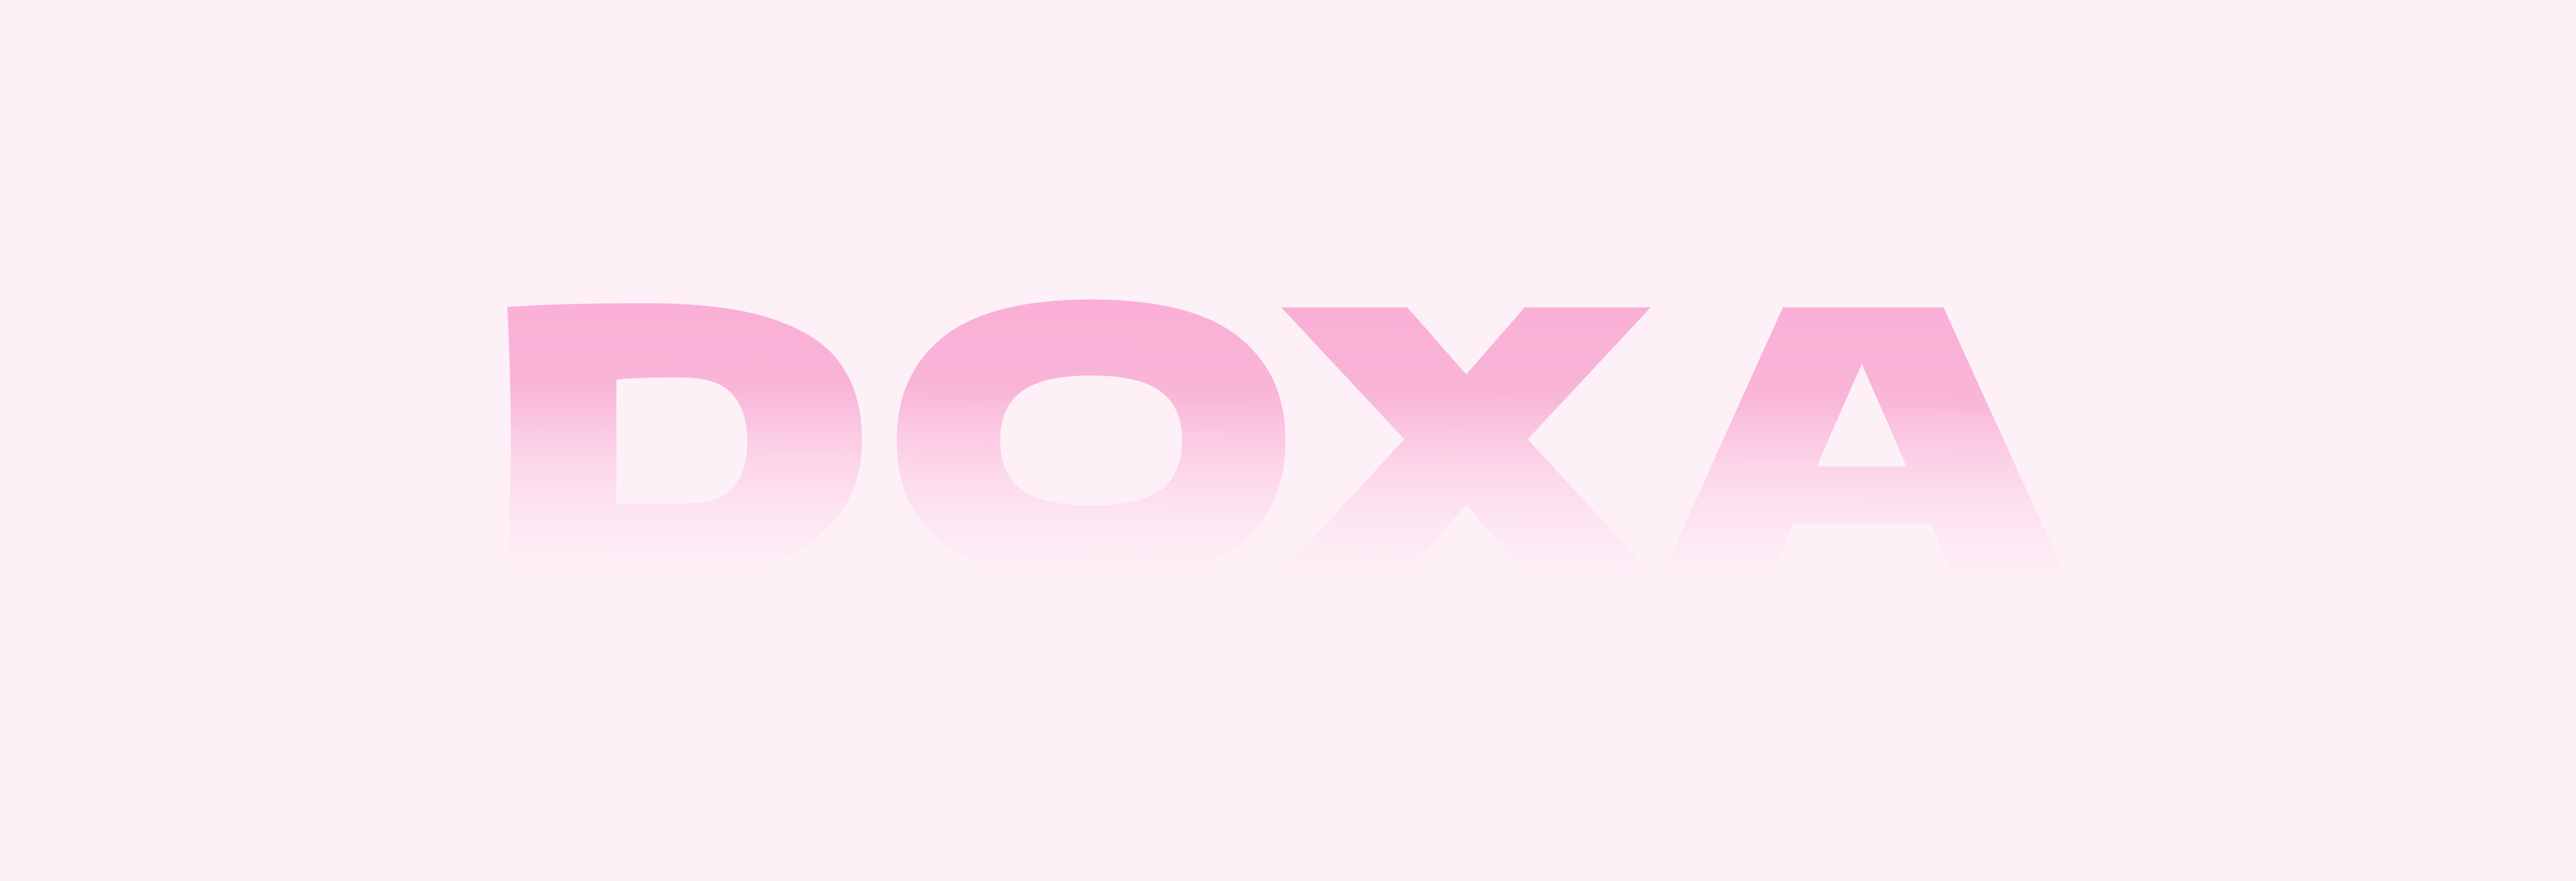 DOXA Logo